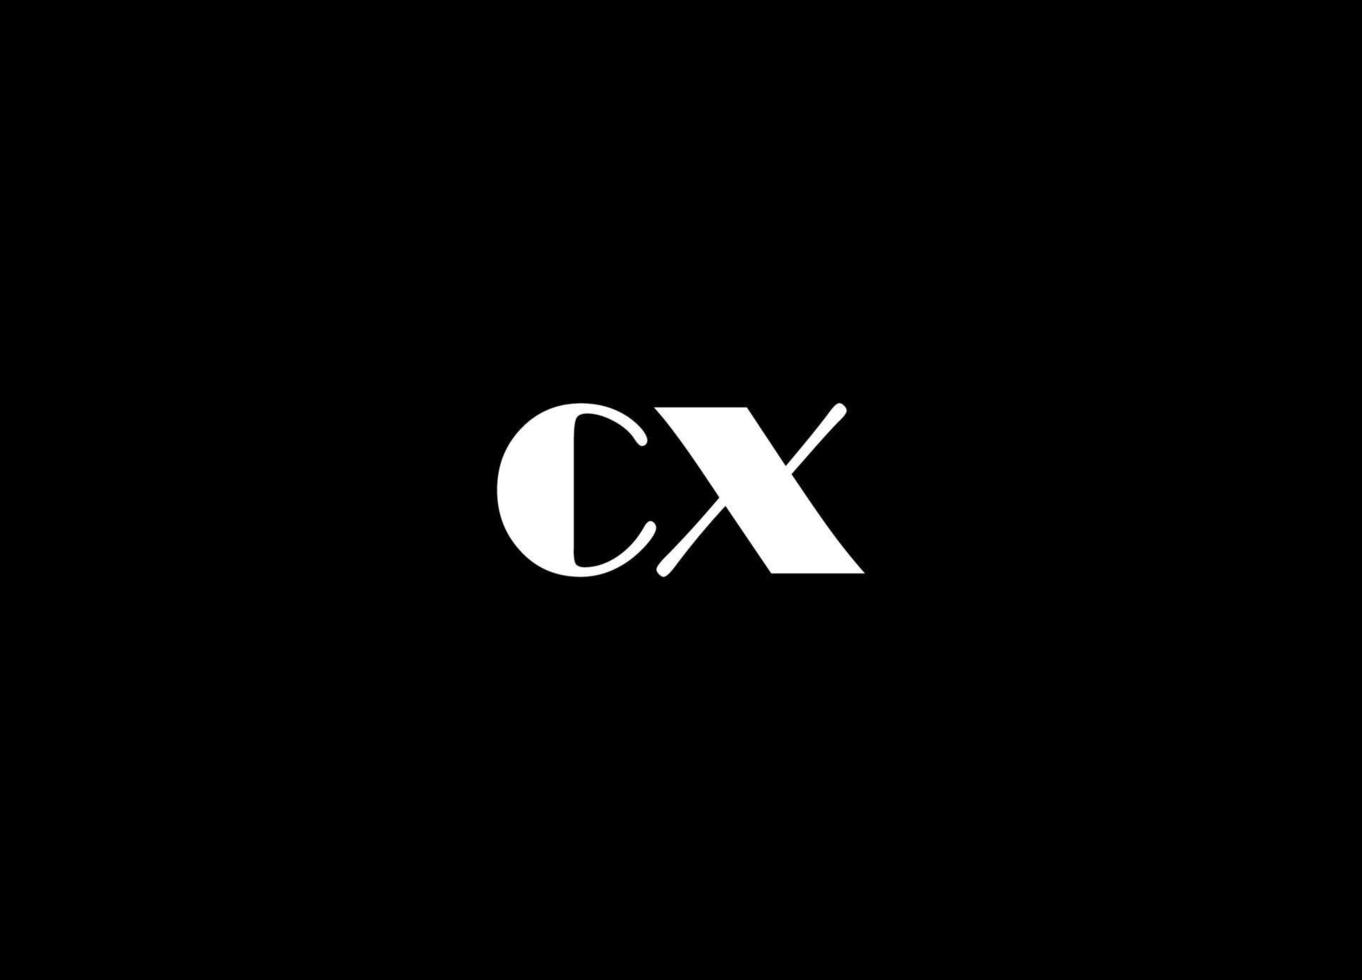 cx logotipo Projeto e companhia logotipo vetor